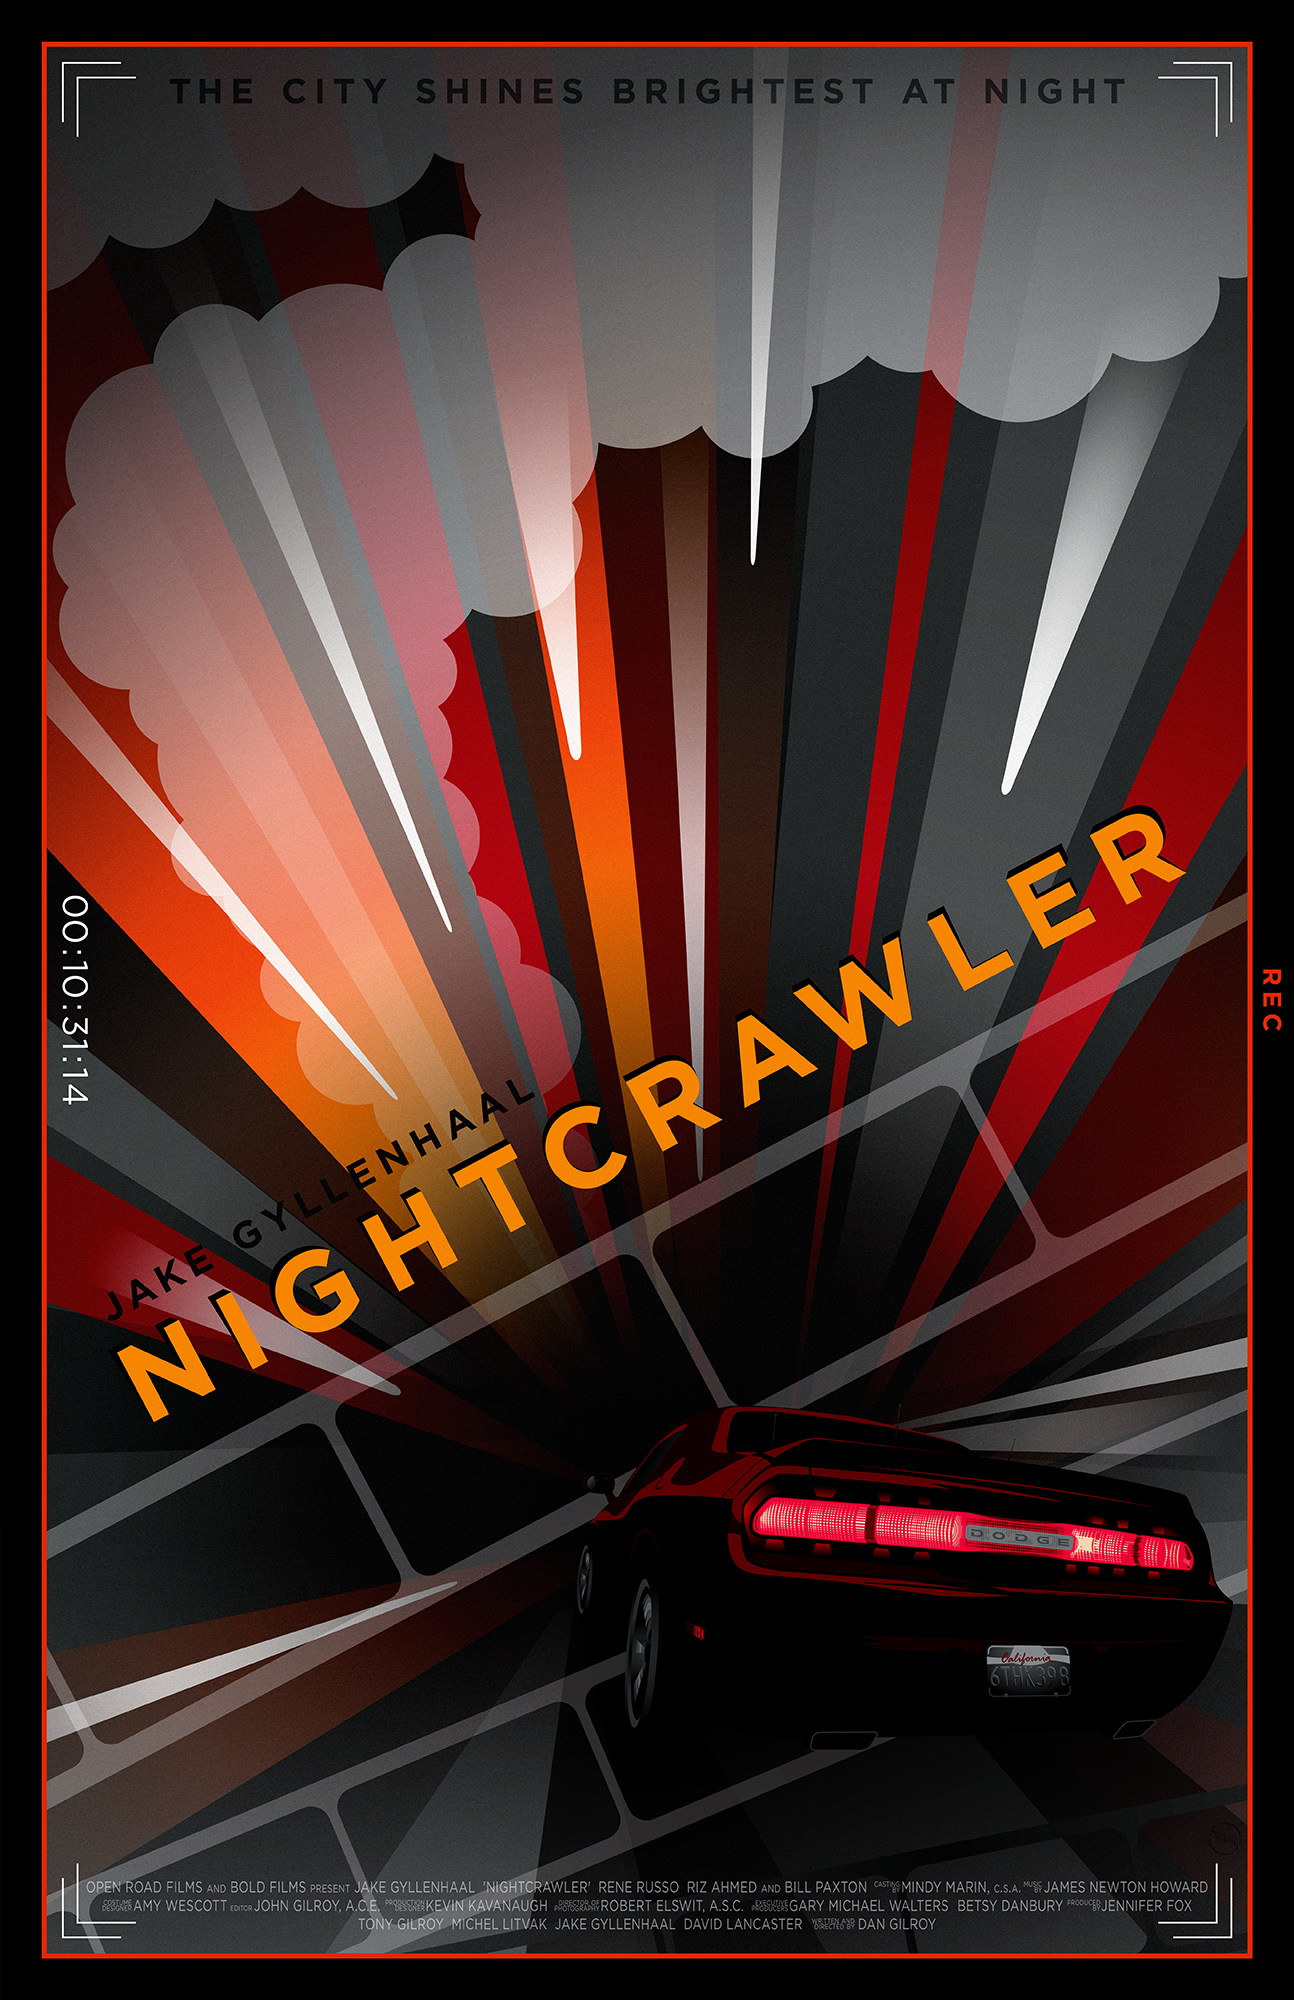 nightcrawler movie cover